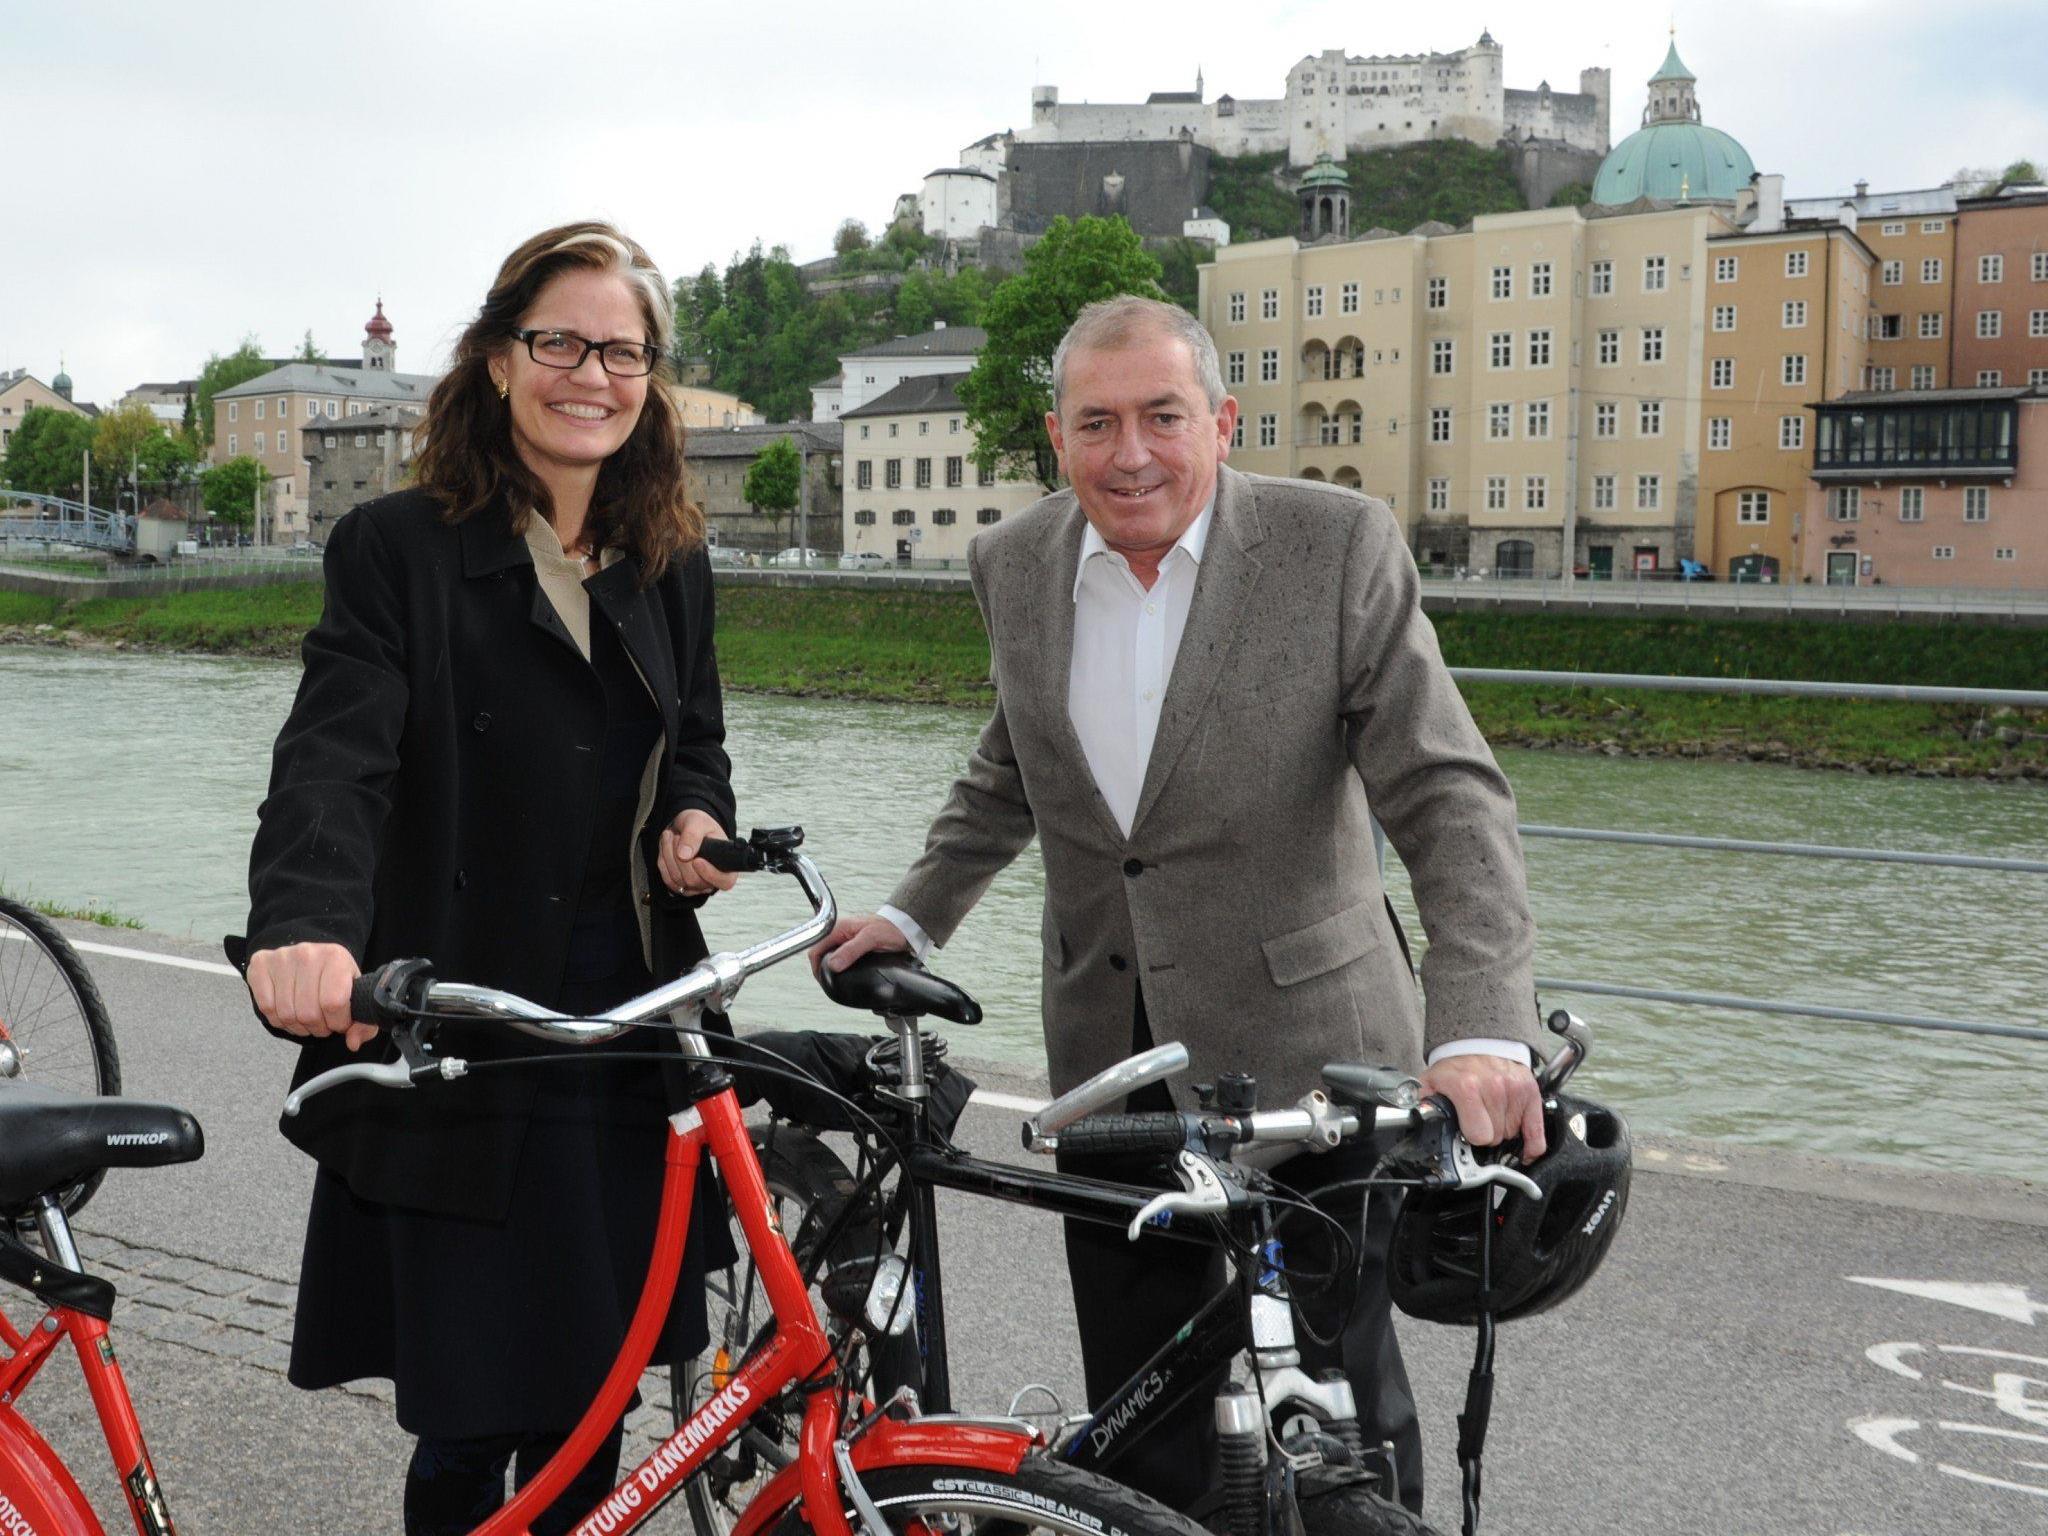 Die dänische Botschafterin und Bürgermeister Heinz Schaden unternahmen eine Tour mit dem Rad, bevor es zum offiziellen Termin ging.